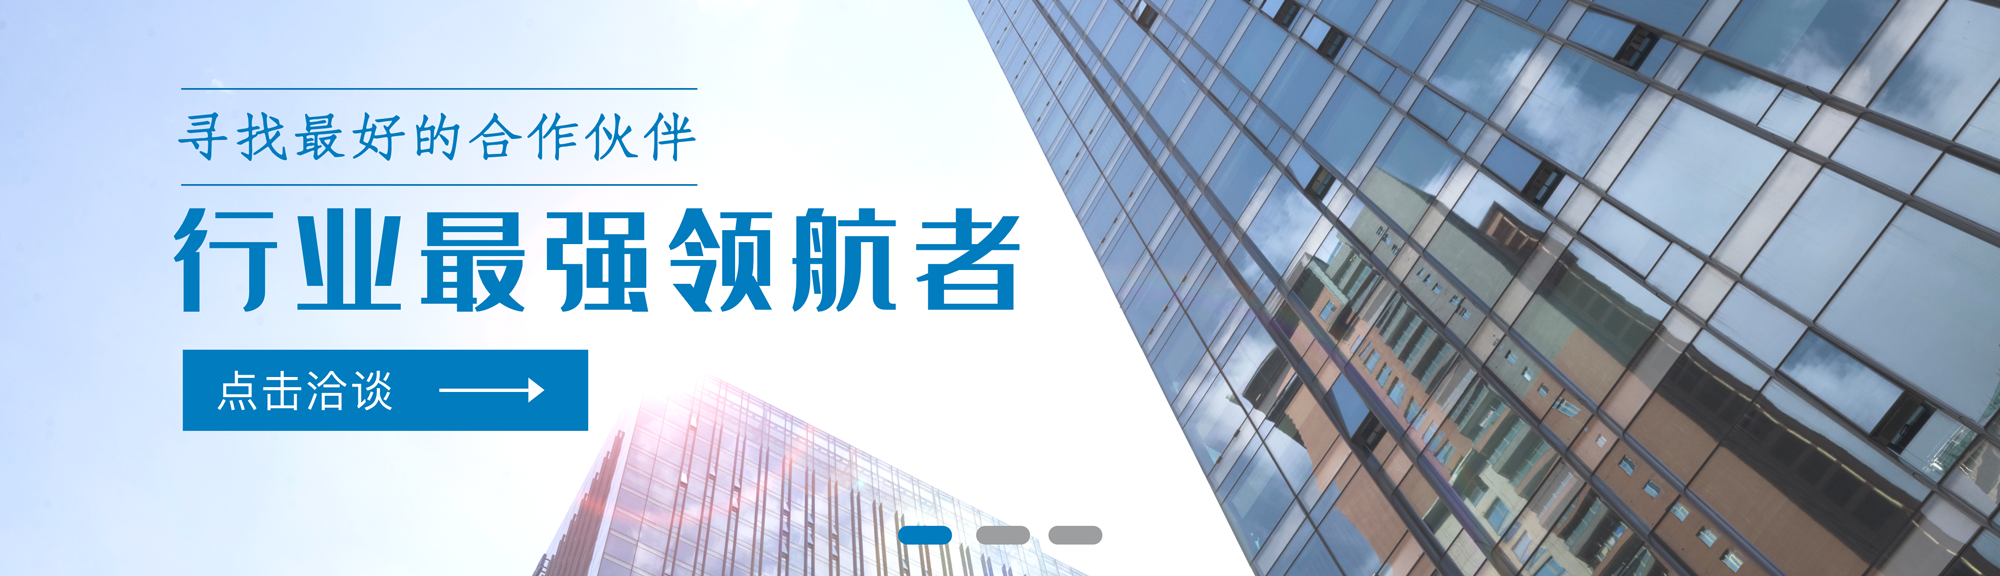 爱华振动测量仪 - 广州静距离环保科技有限公司